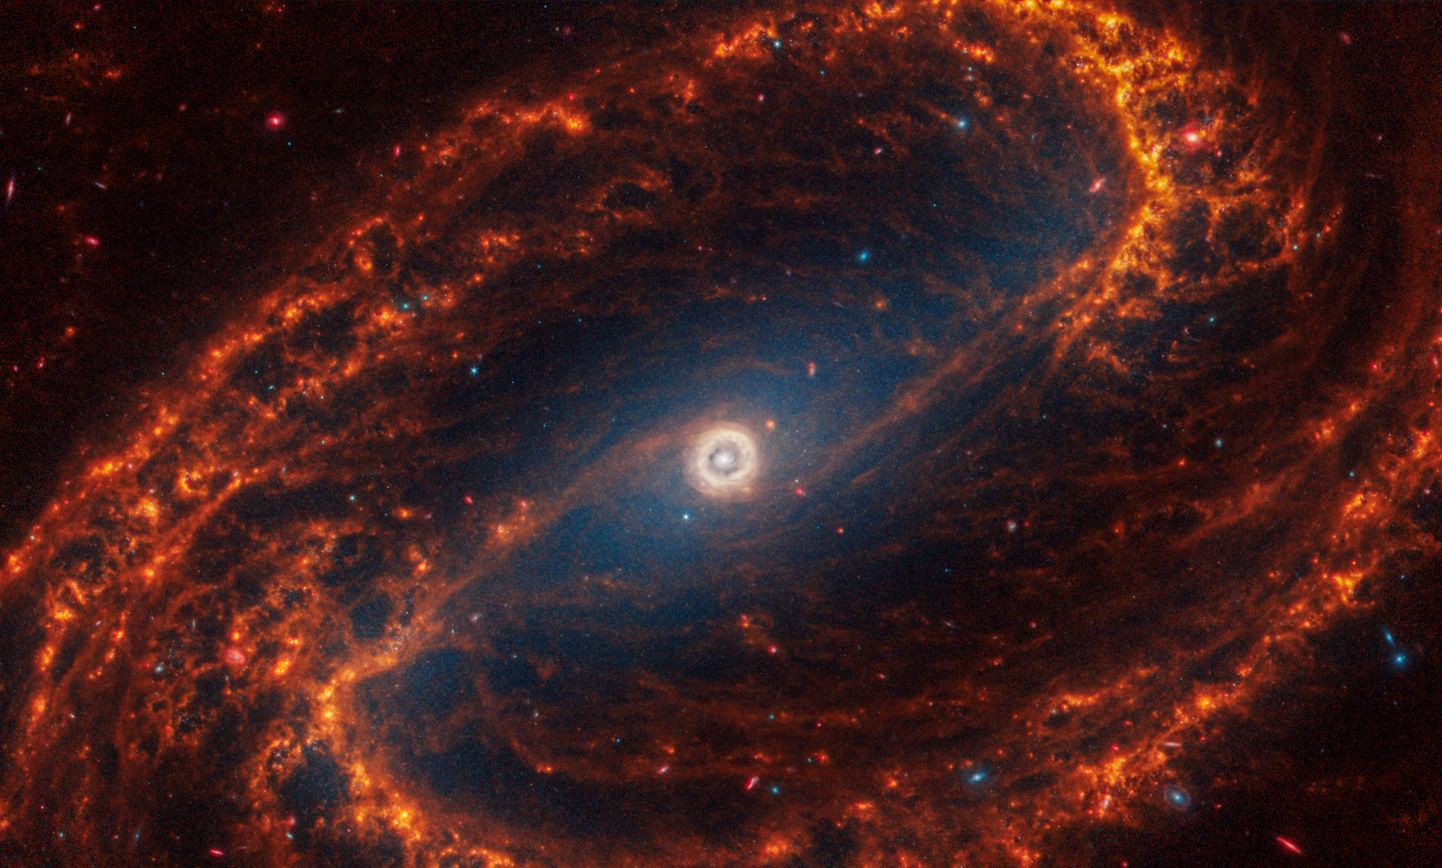 NASA avaldas hulga pilte, mille tegi James Webbi teleskoop universumi äärealadest. Kosmoseteleskoop leidis ka terve hulga massiivseid musti auke, mida on rohkem, kui arvata oskasime. Pildil on galaktika, mille keskmes laiub hiiglaslik must auk.